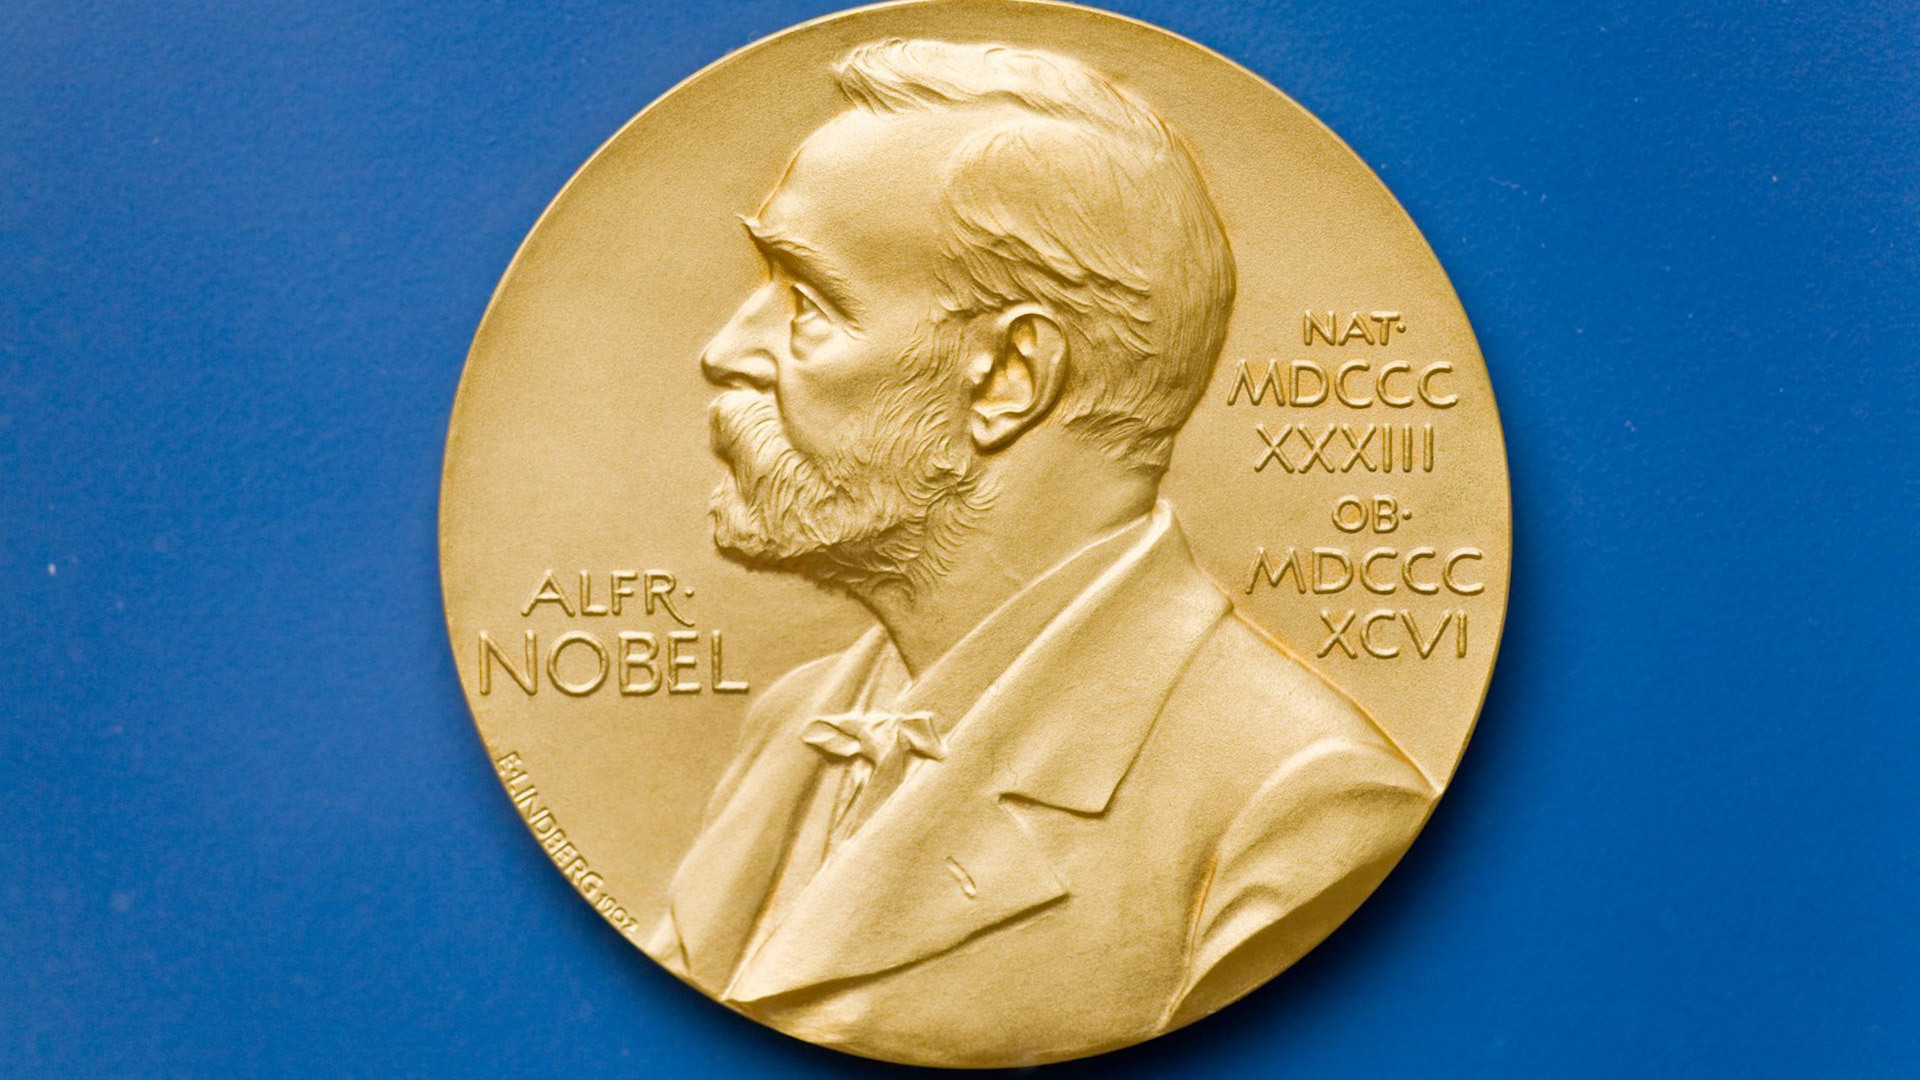 Nobel prize awards. Нобель нобелевскаямпремия. Медаль лауреата Нобелевской премии. Символ Нобелевской премии.